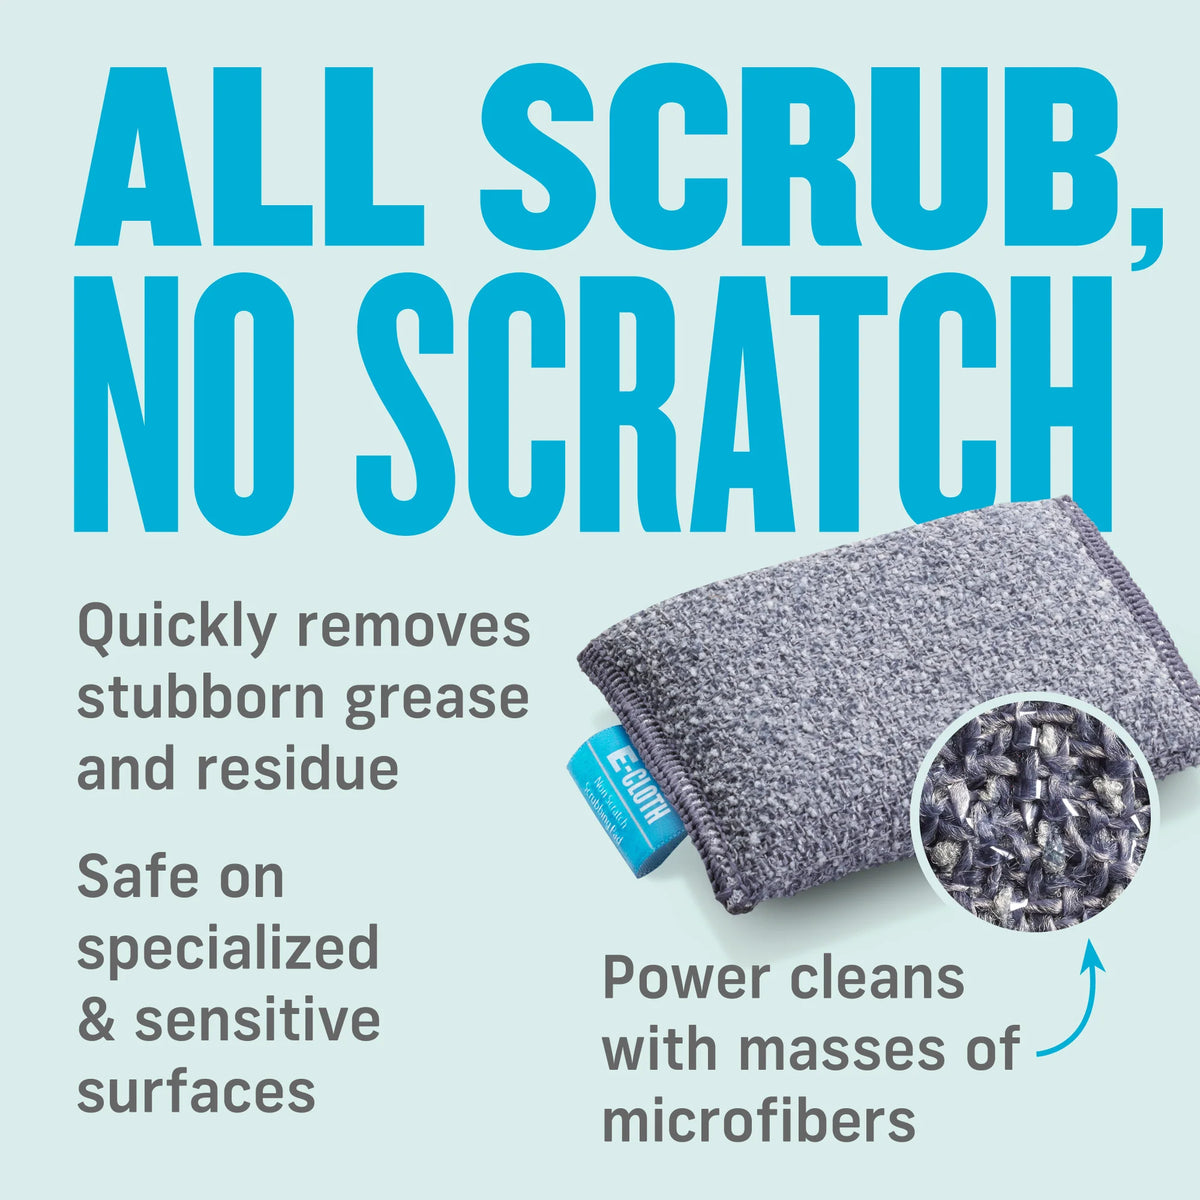 2 Non-Scratch Scrubbing Pads